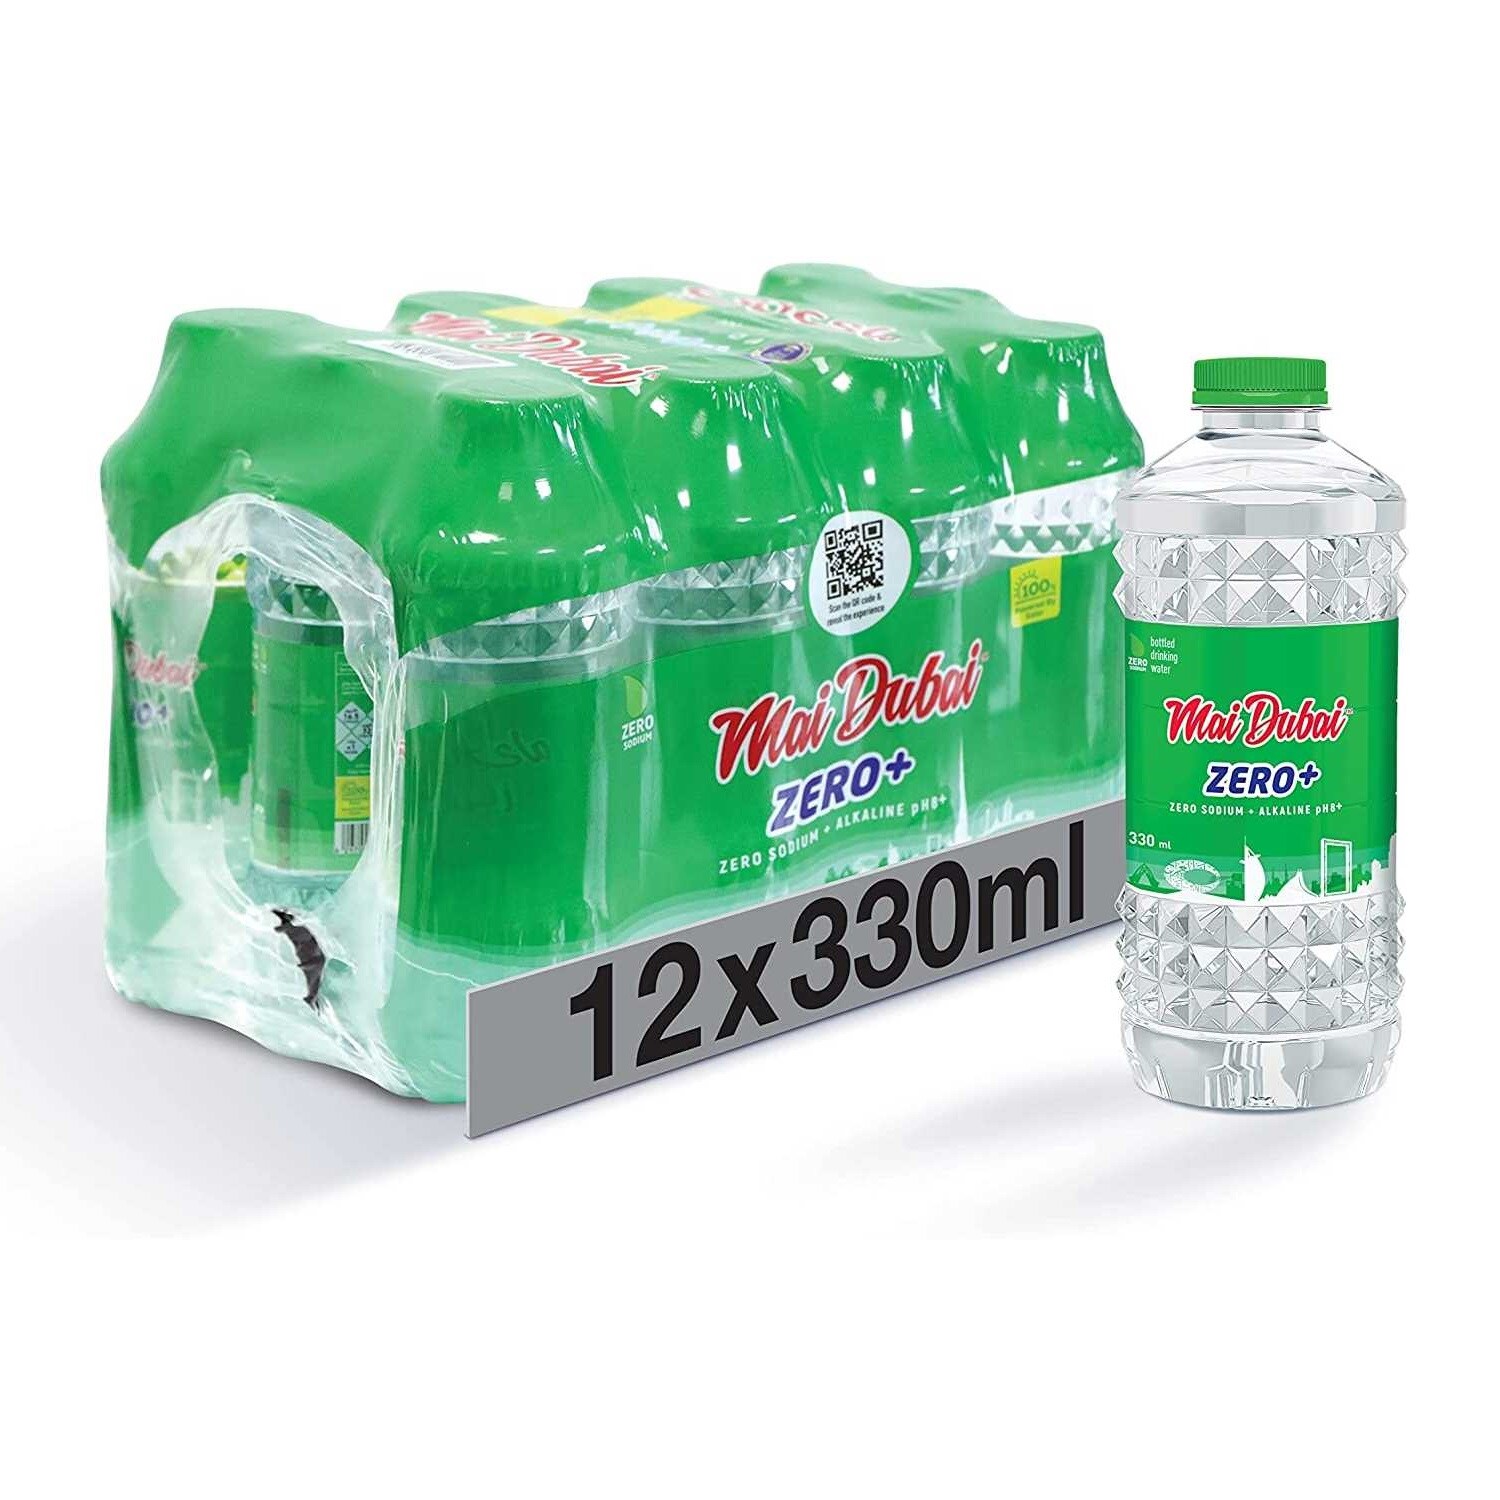 Mai Dubai ZERO Alkaline Zero+  Sodium Water, 330ml, Pack of 12